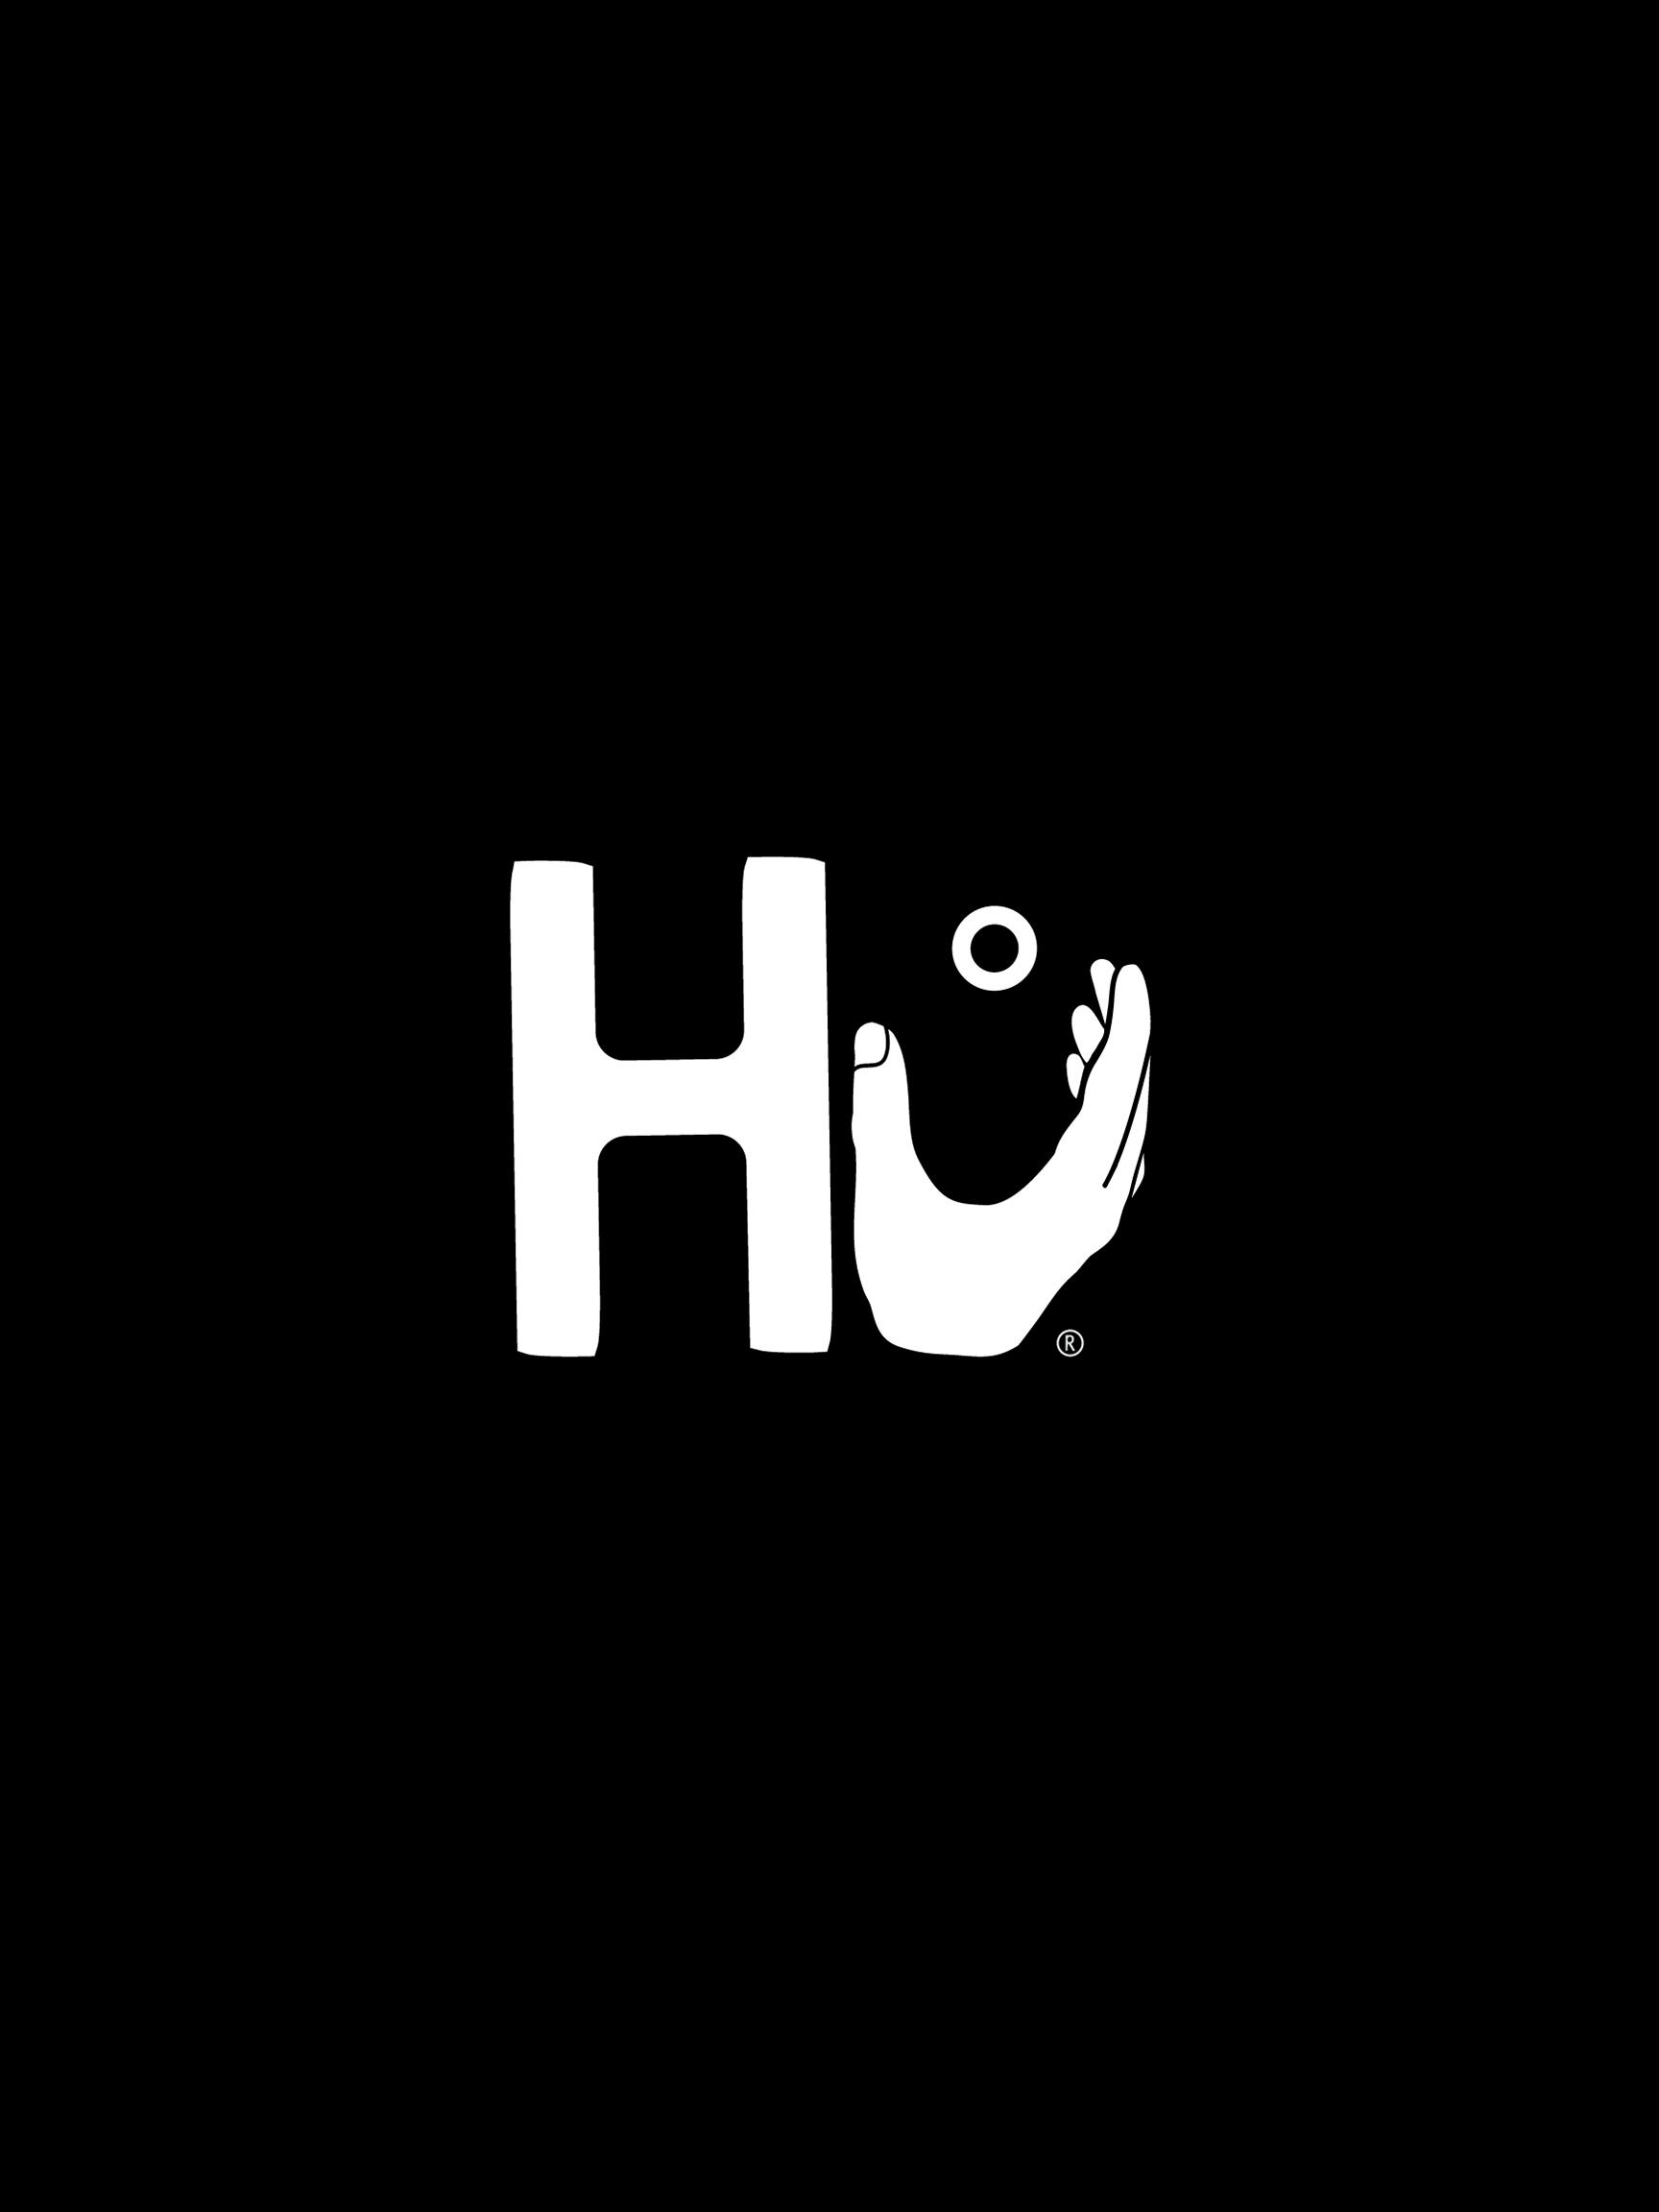 Hu logo 2x